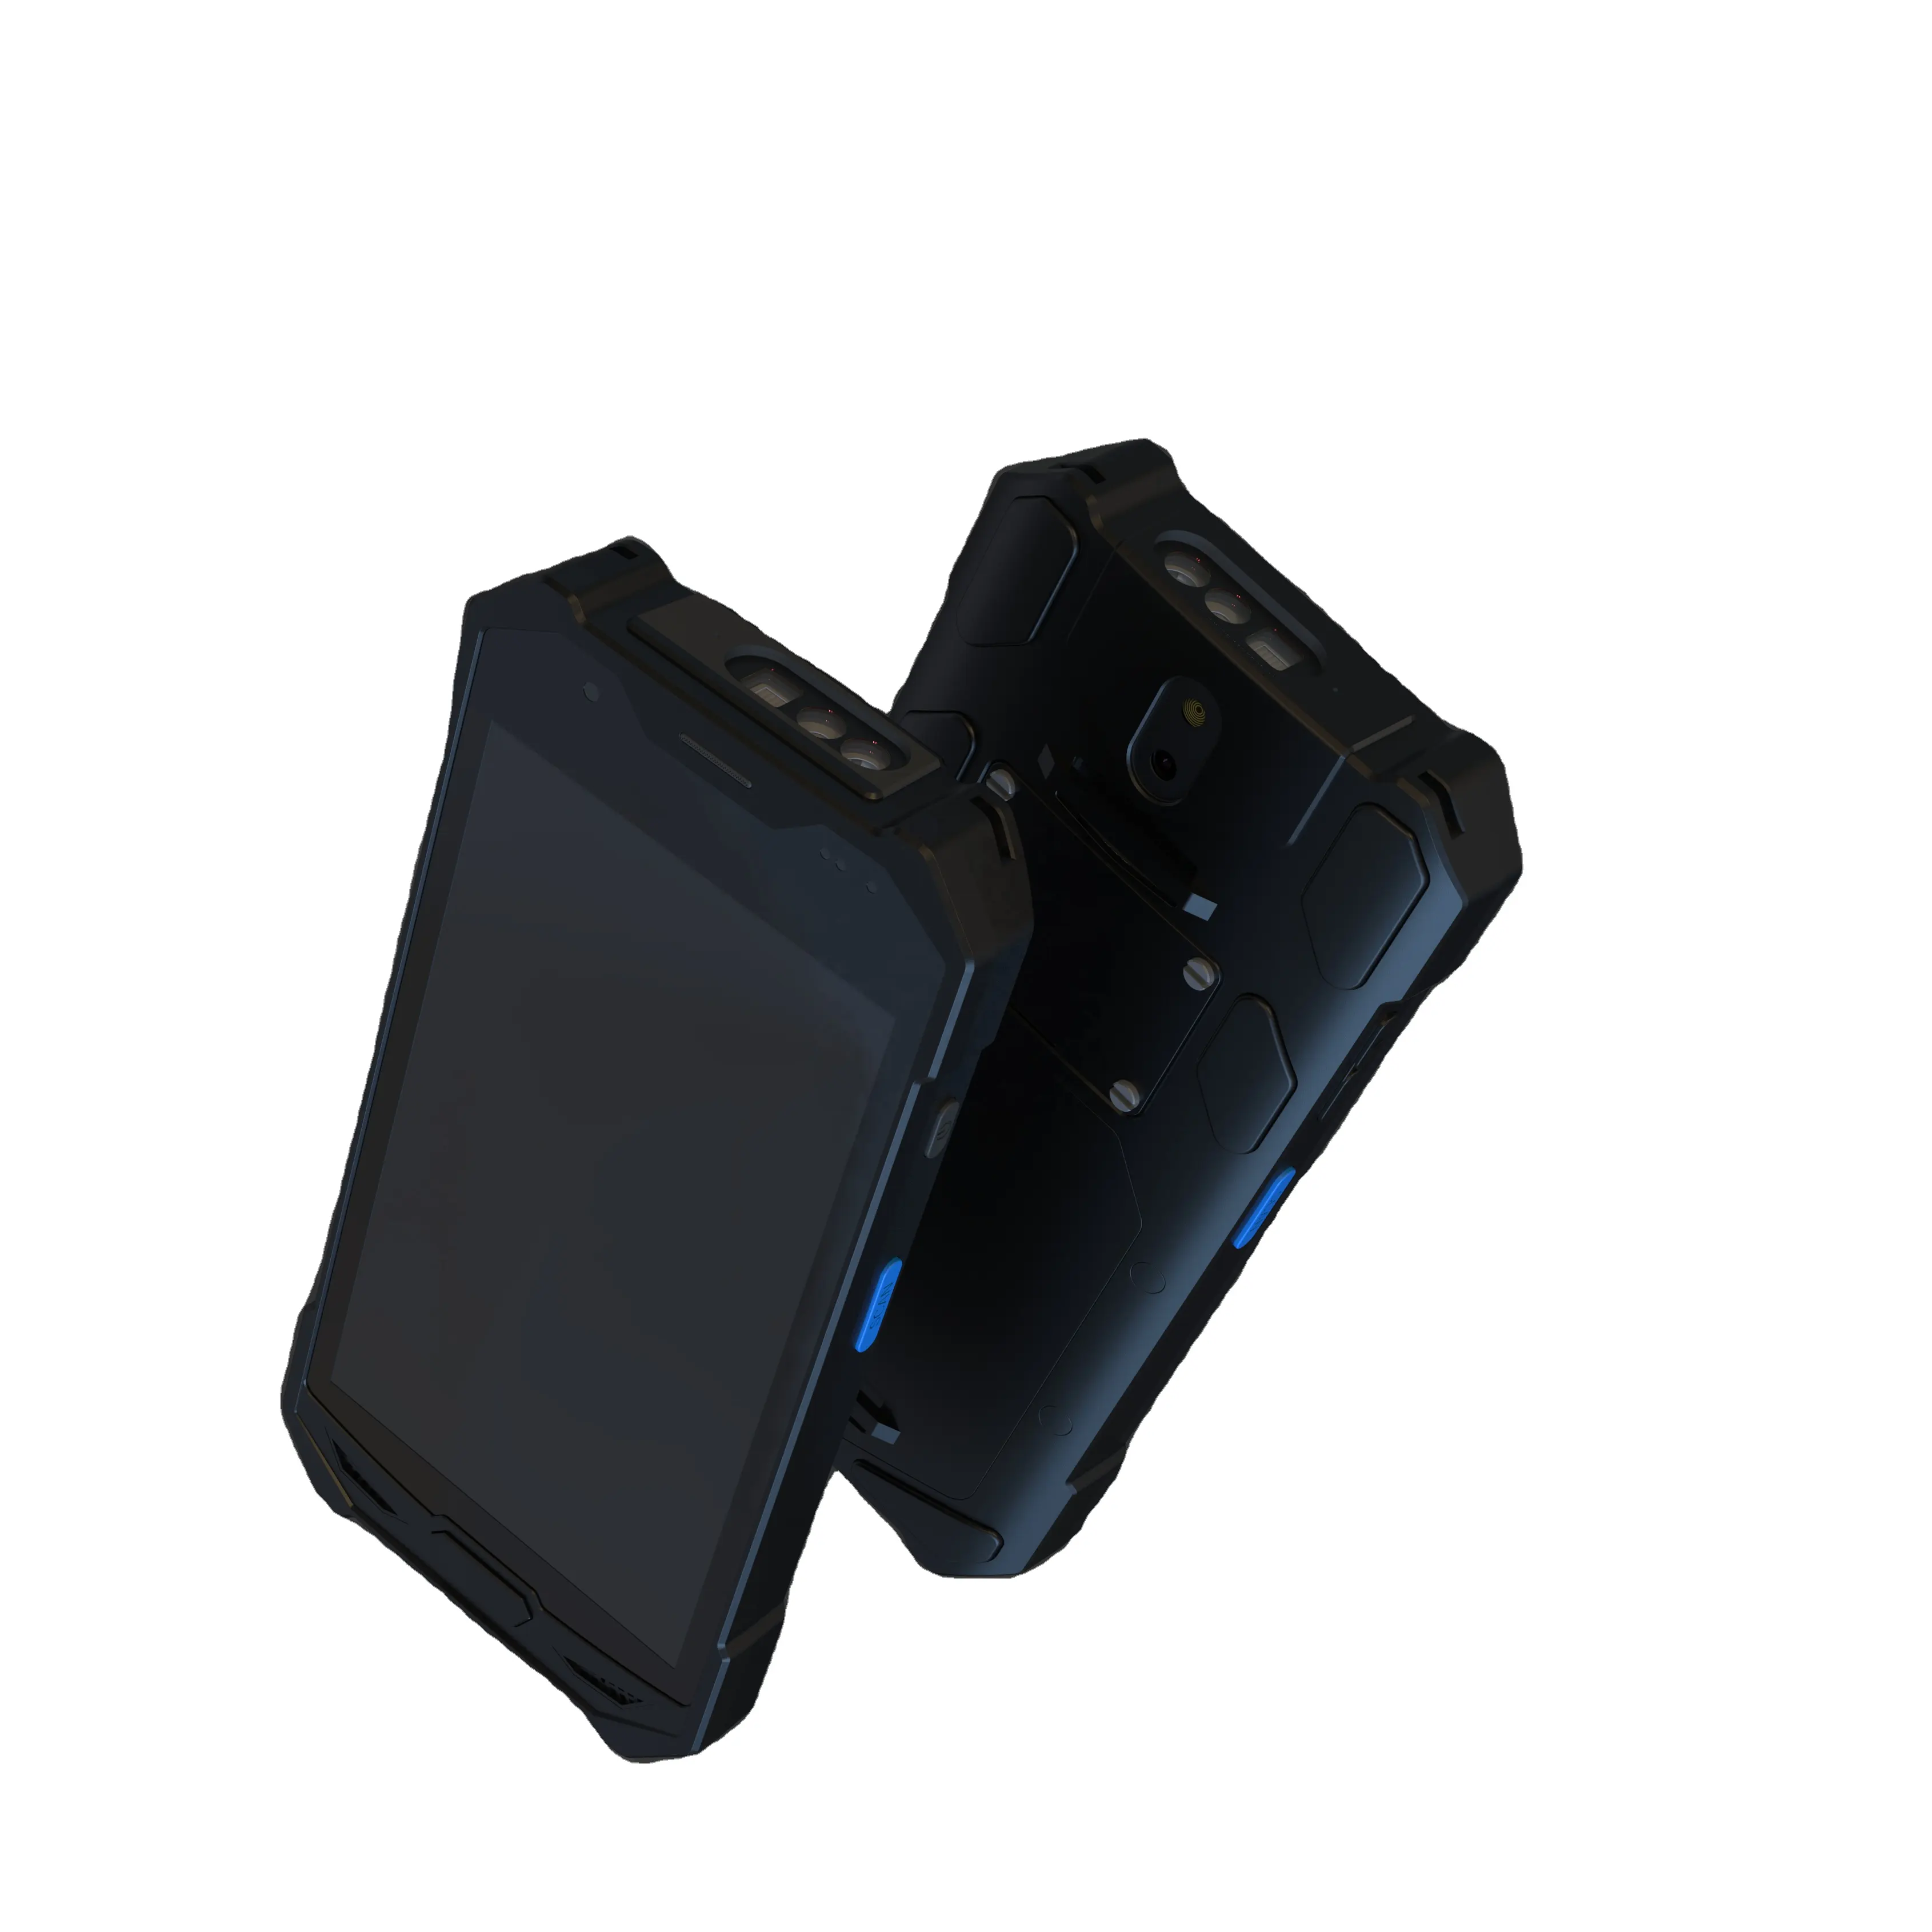 Terminal portable intelligent collecteur de données android 11 scanner de codes-barres Octa Core 2.0GHz 4G NFC industrie PDA ordinateur mobile robuste